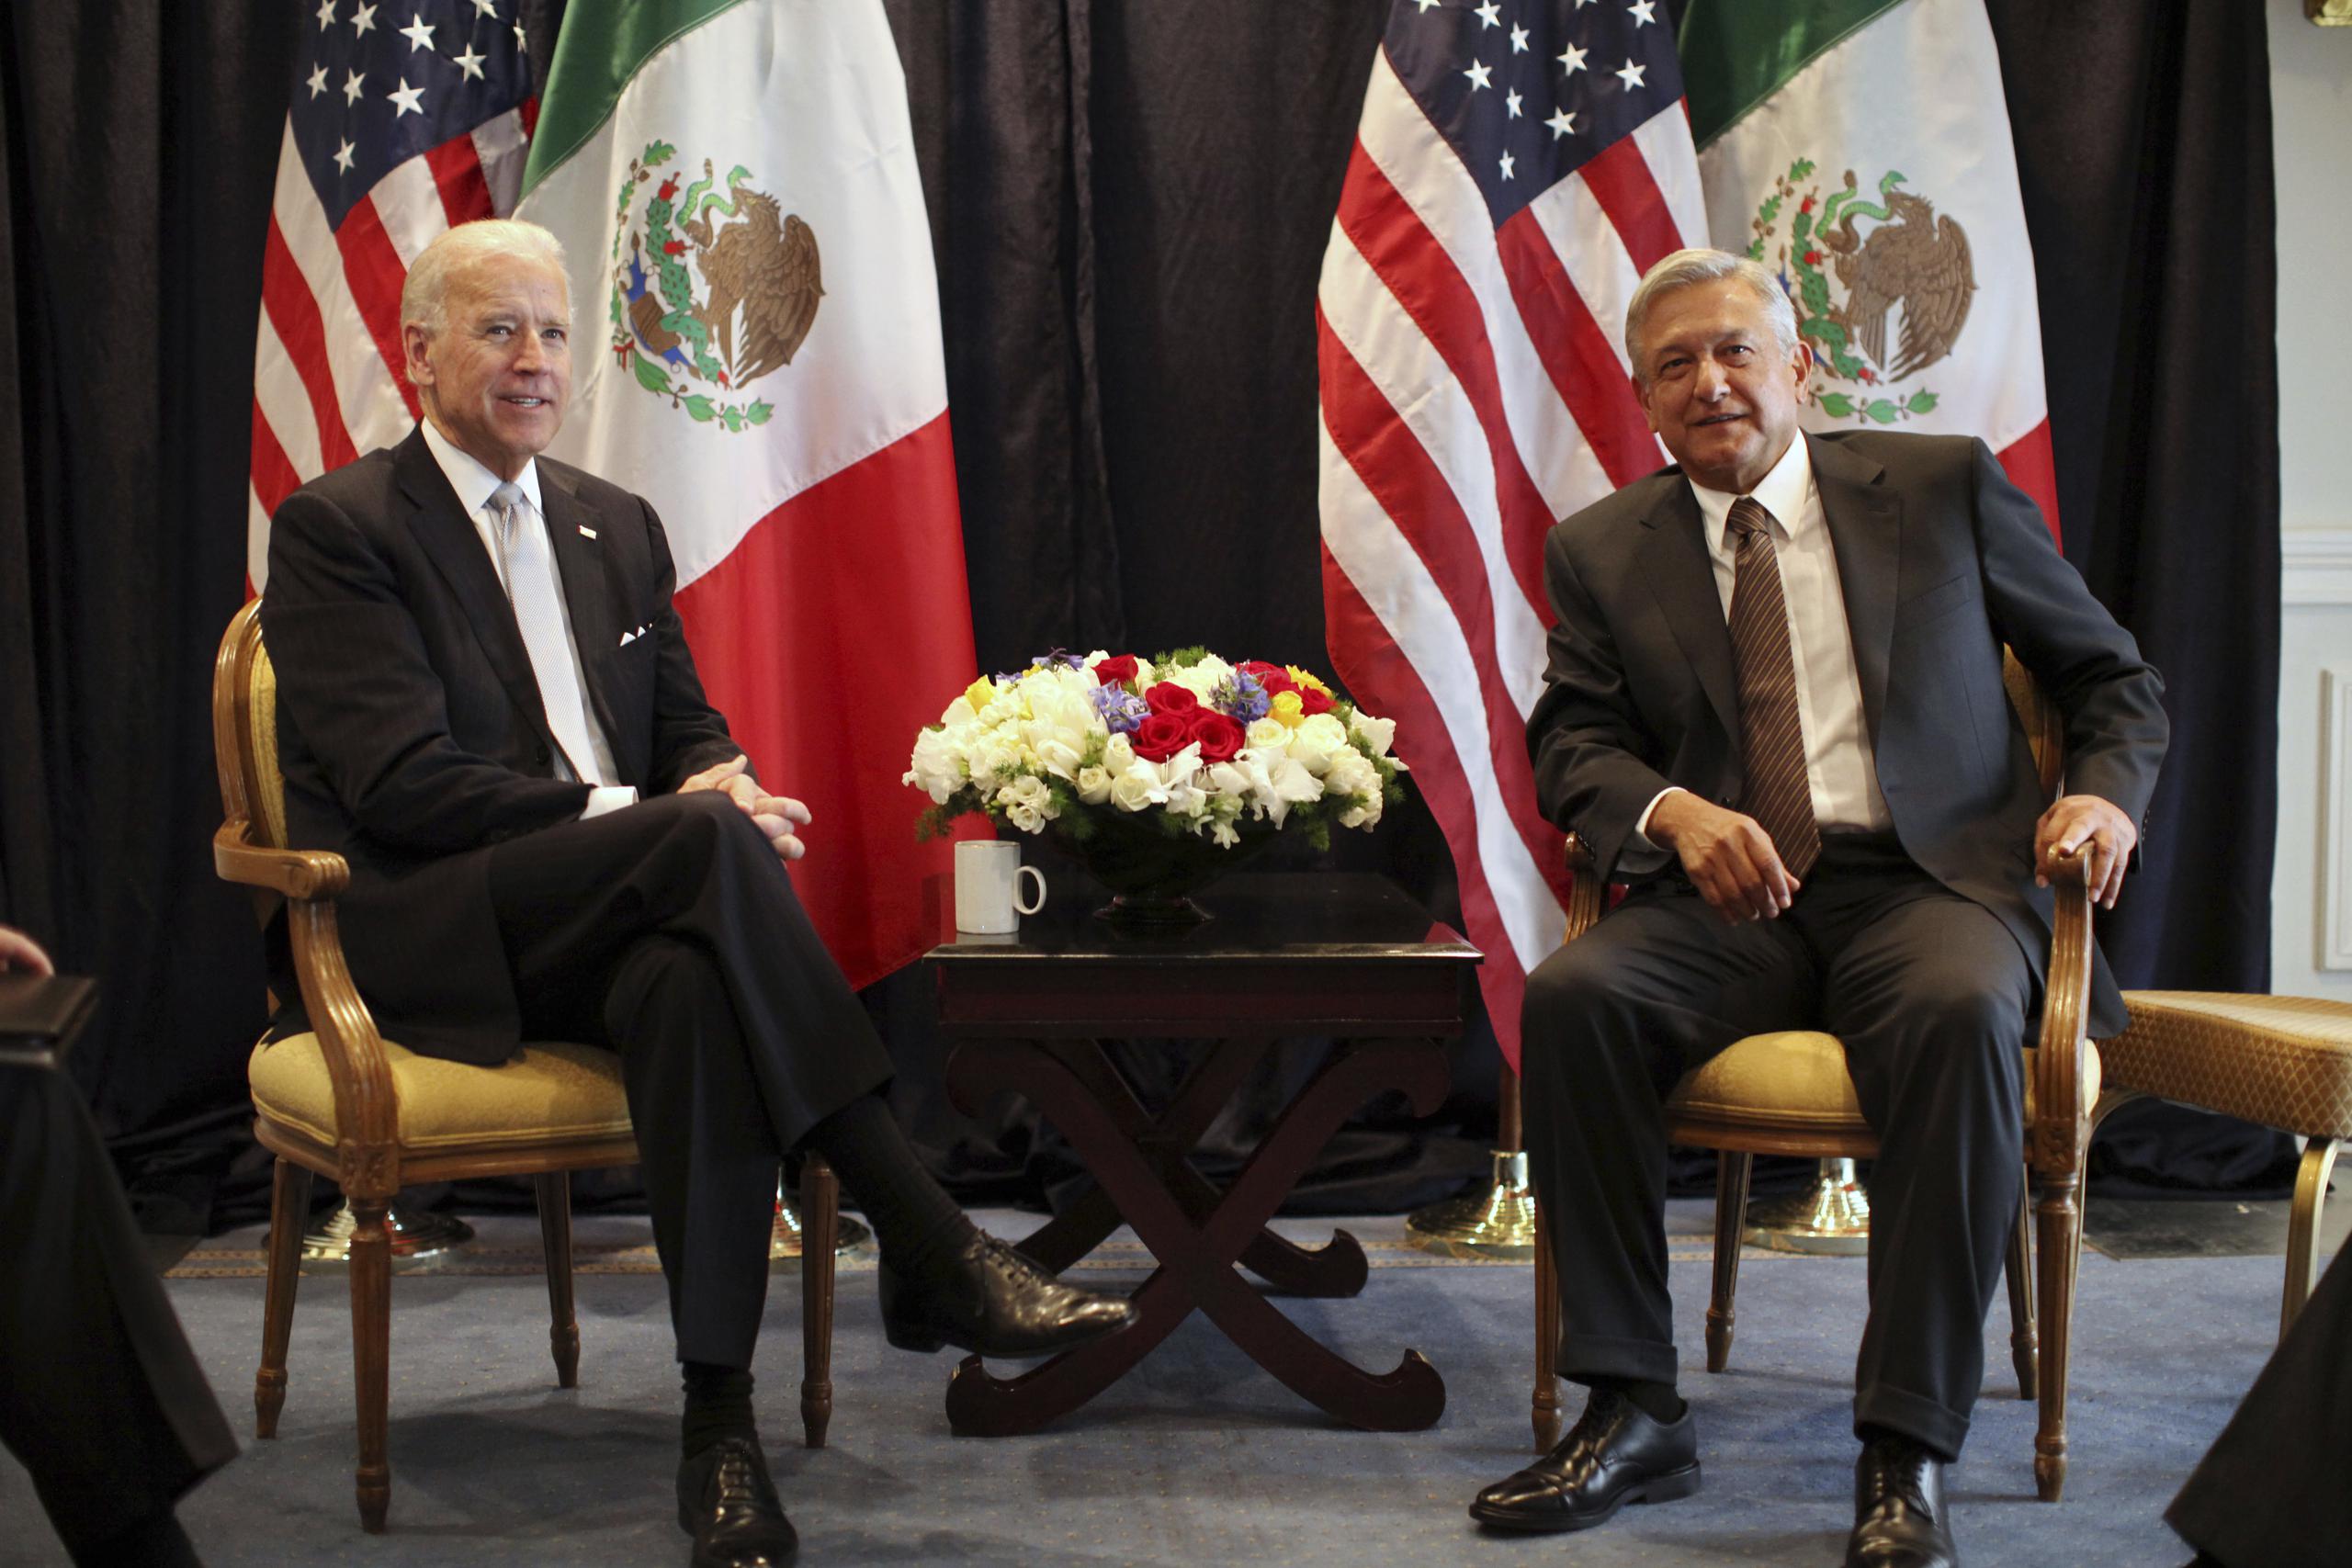 El miércoles, López Obrador había afirmado que su Gobierno no se deja “presionar” por nadie y que no es “pelele” ni “empleado” del Gobierno de Estados Unidos en materia migratoria.